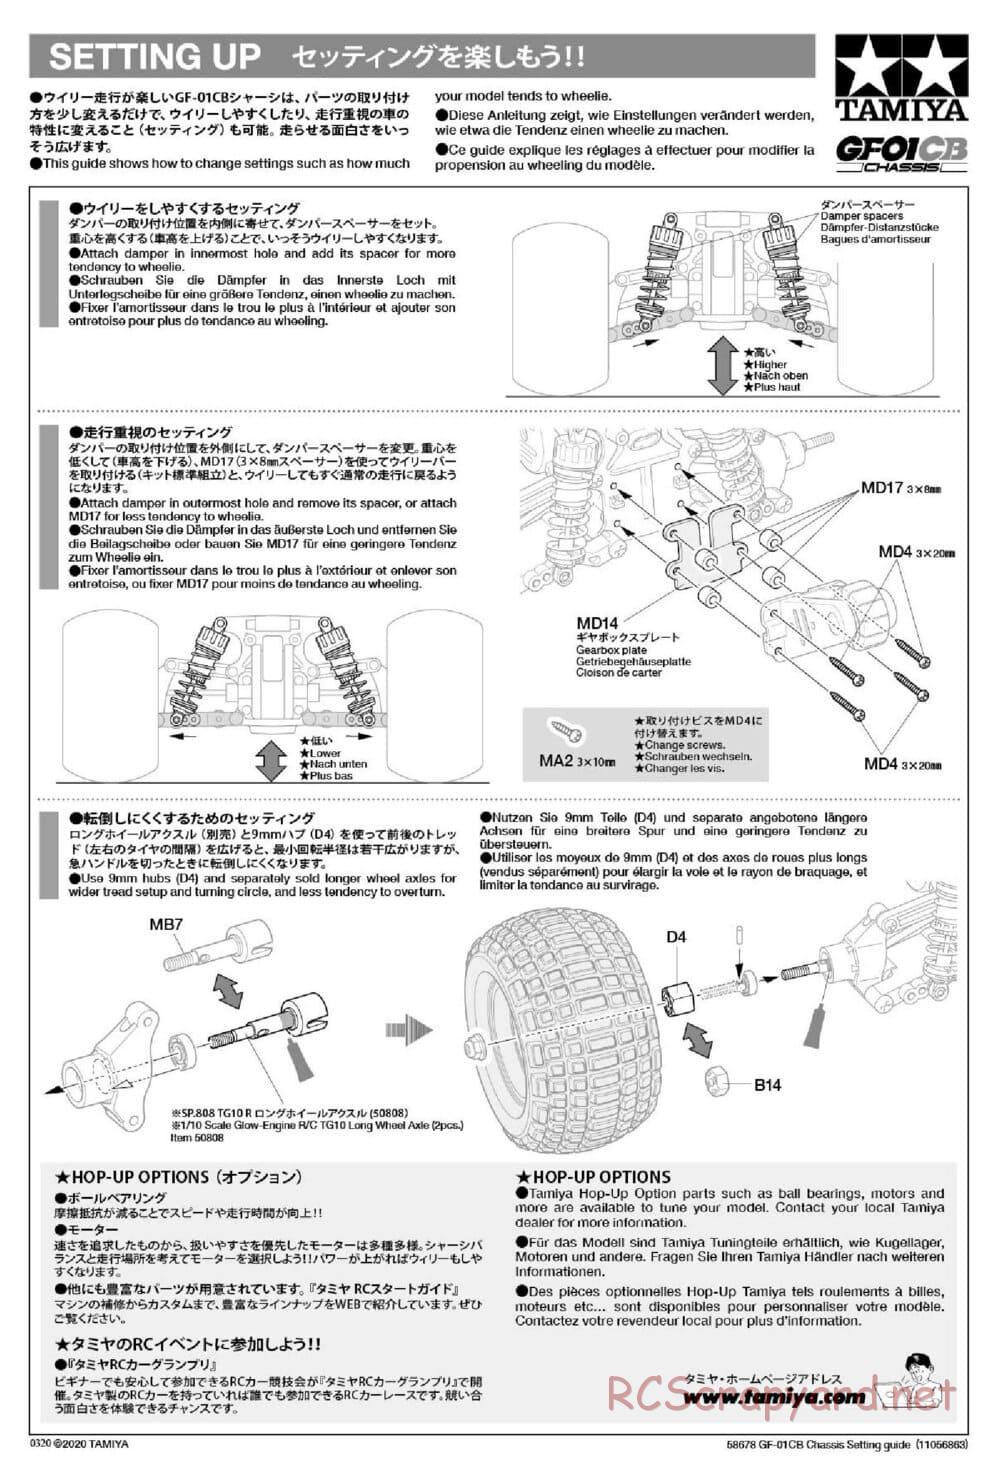 Tamiya - GF-01CB Chassis - Manual - Page 21